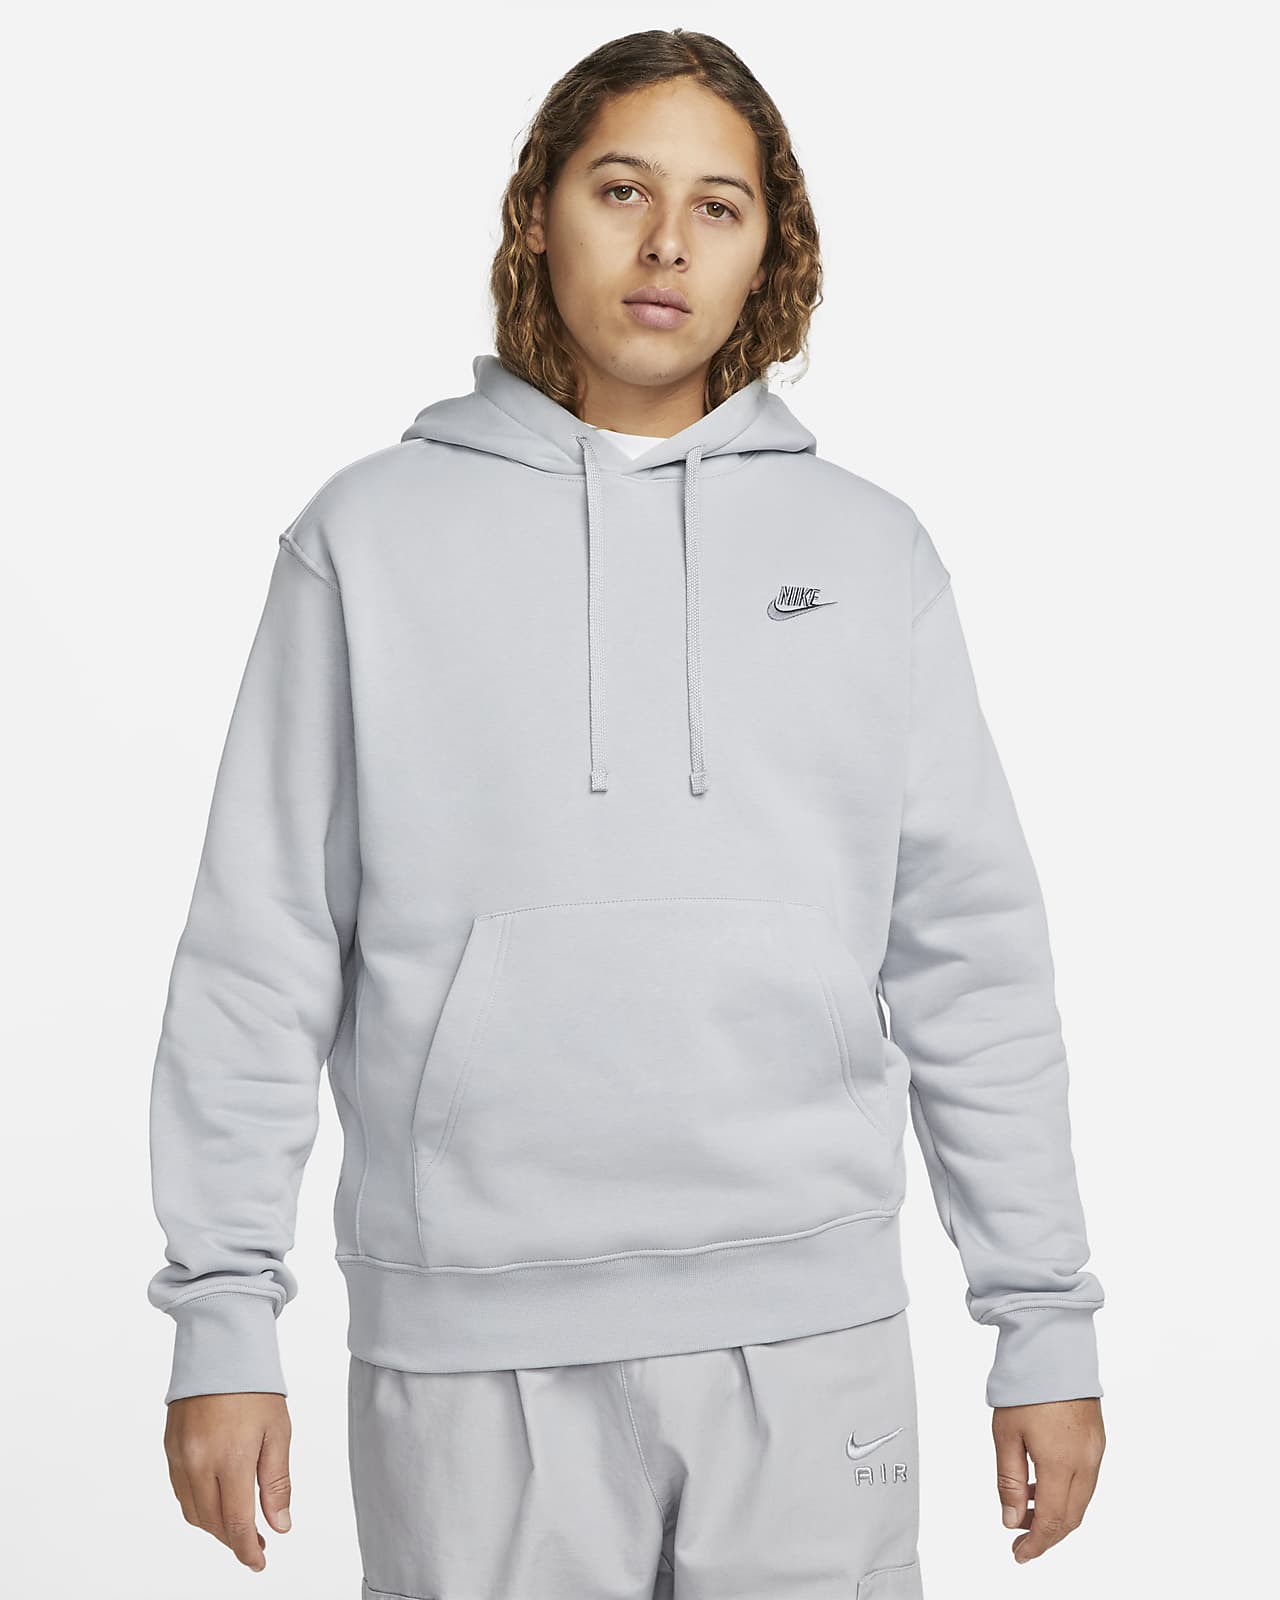 Nike Sportswear Club Fleece Men's Pullover Hoodie